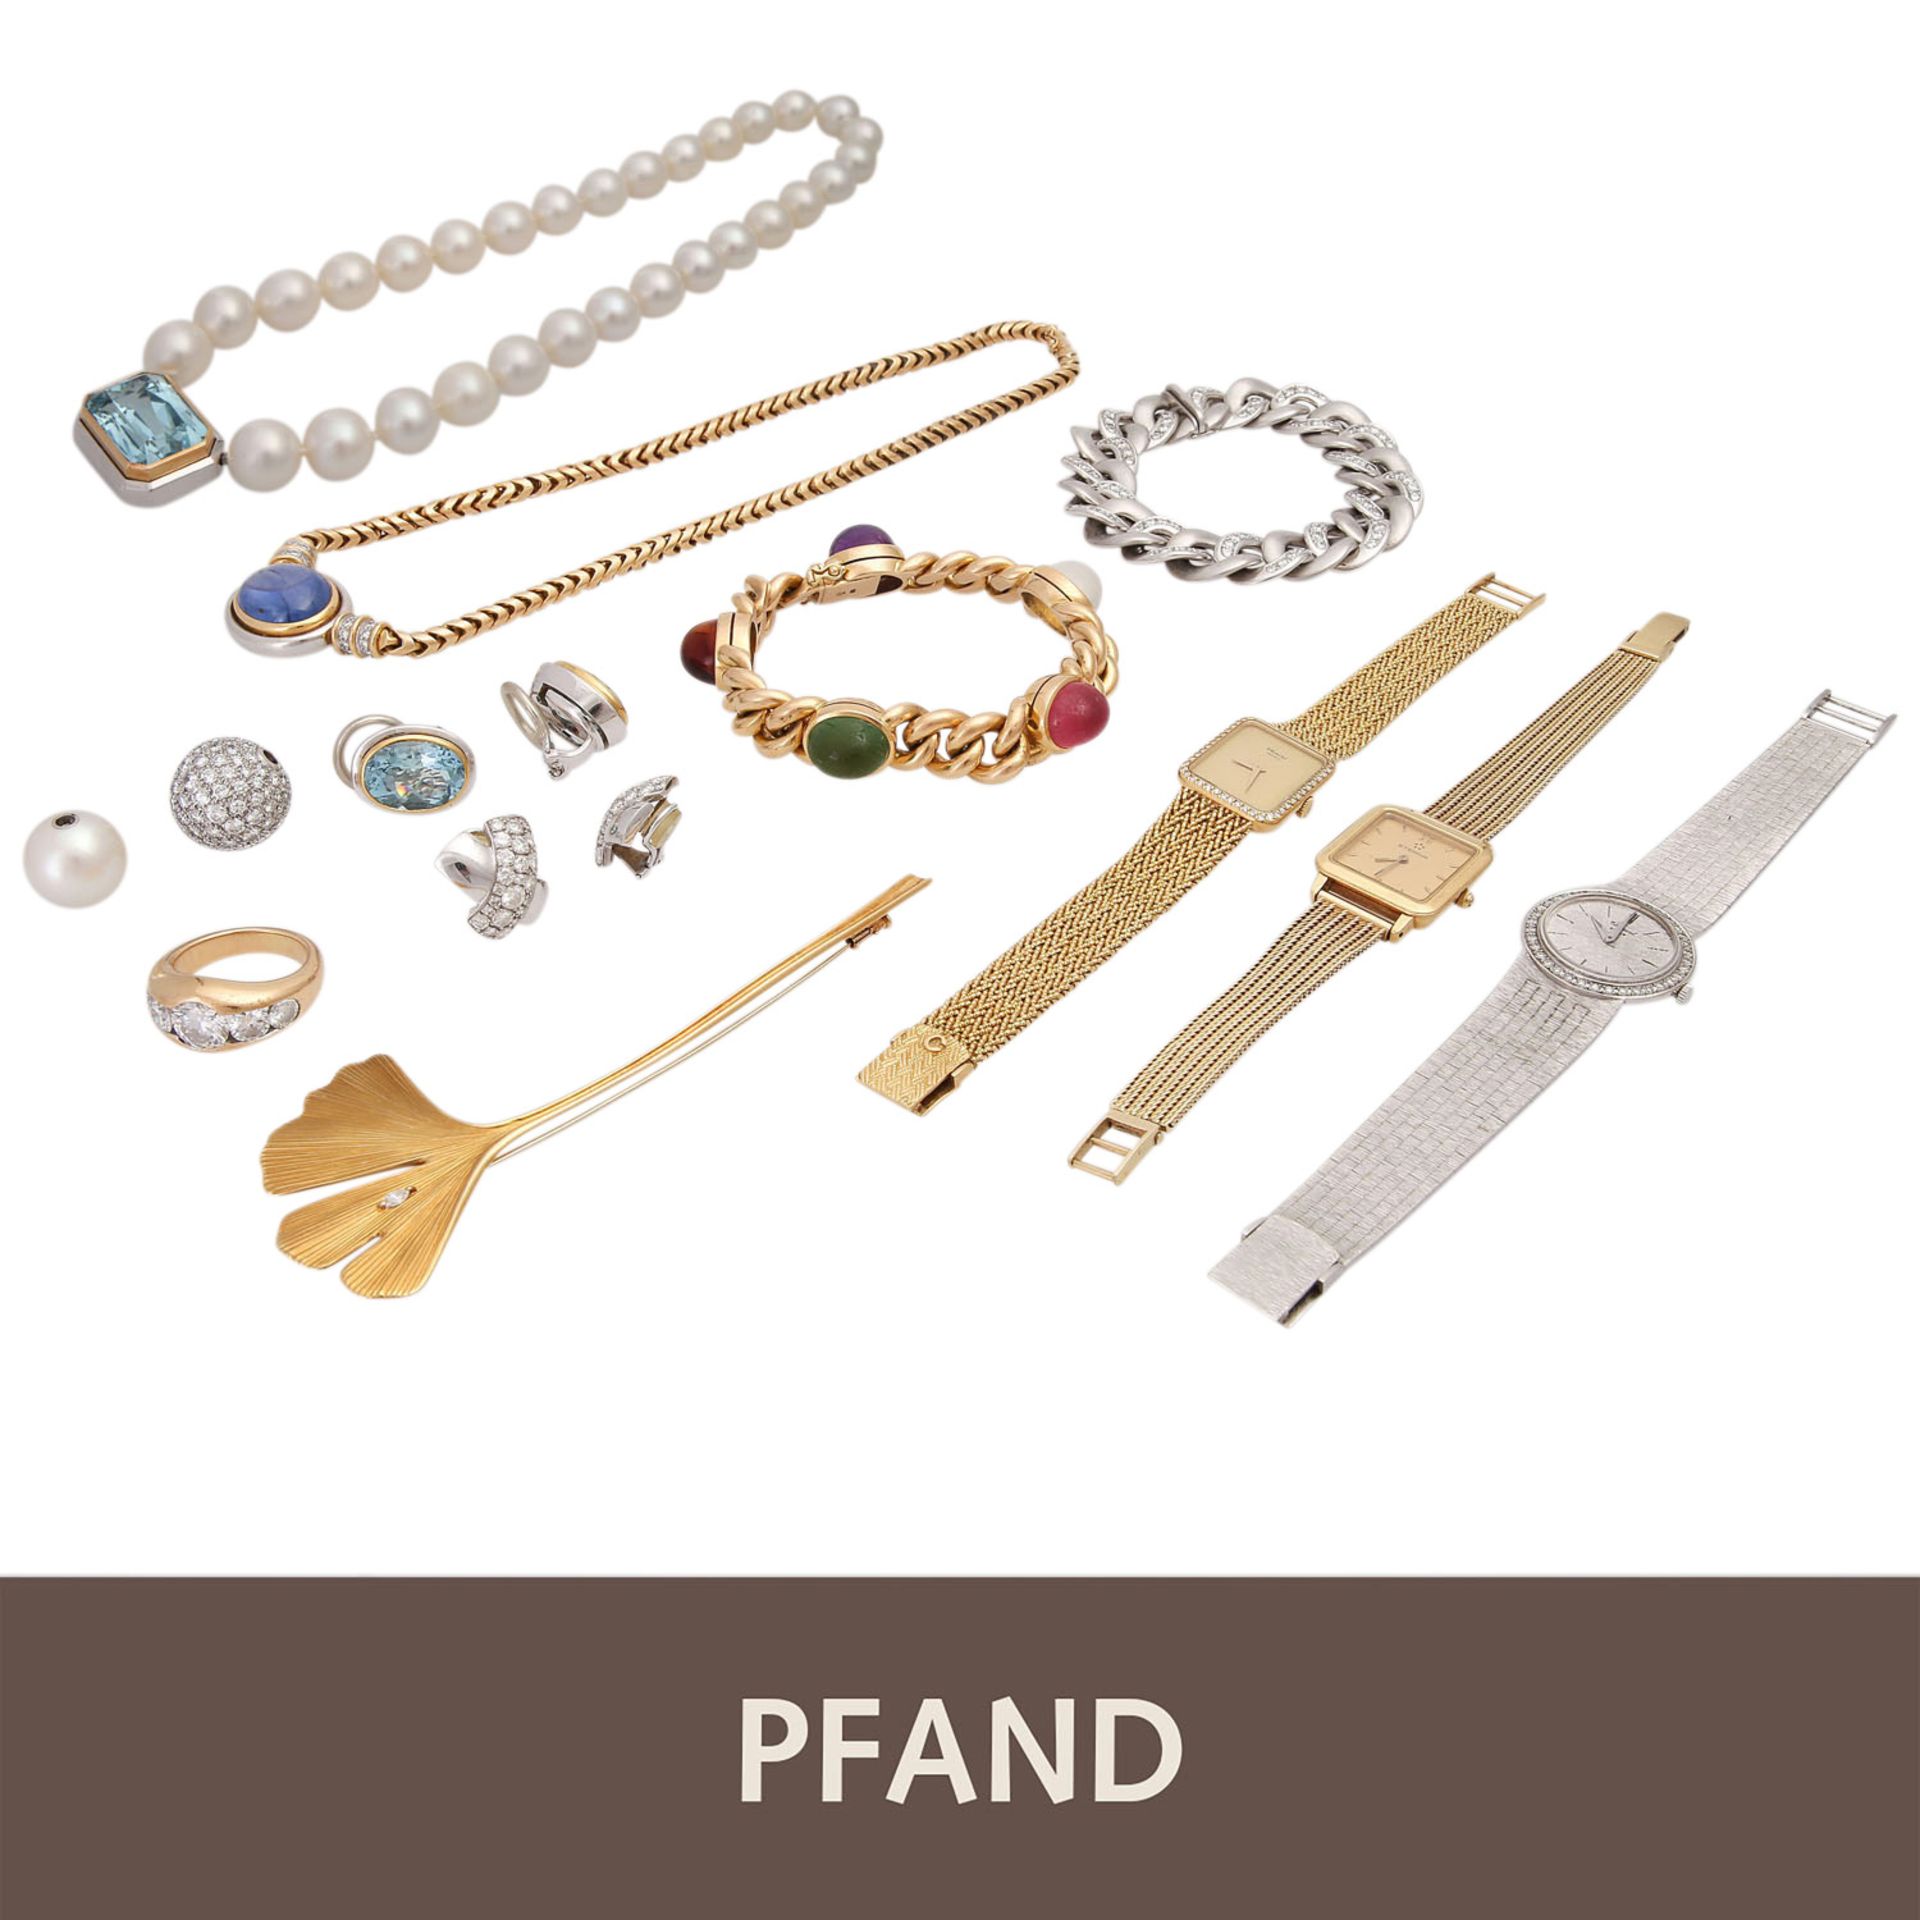 PFANDAUKTION - 1 Brosche, 1 Armband mit Farbedelsteinen,1 Armband mit Brill. 3 Damenuhren. (WG/